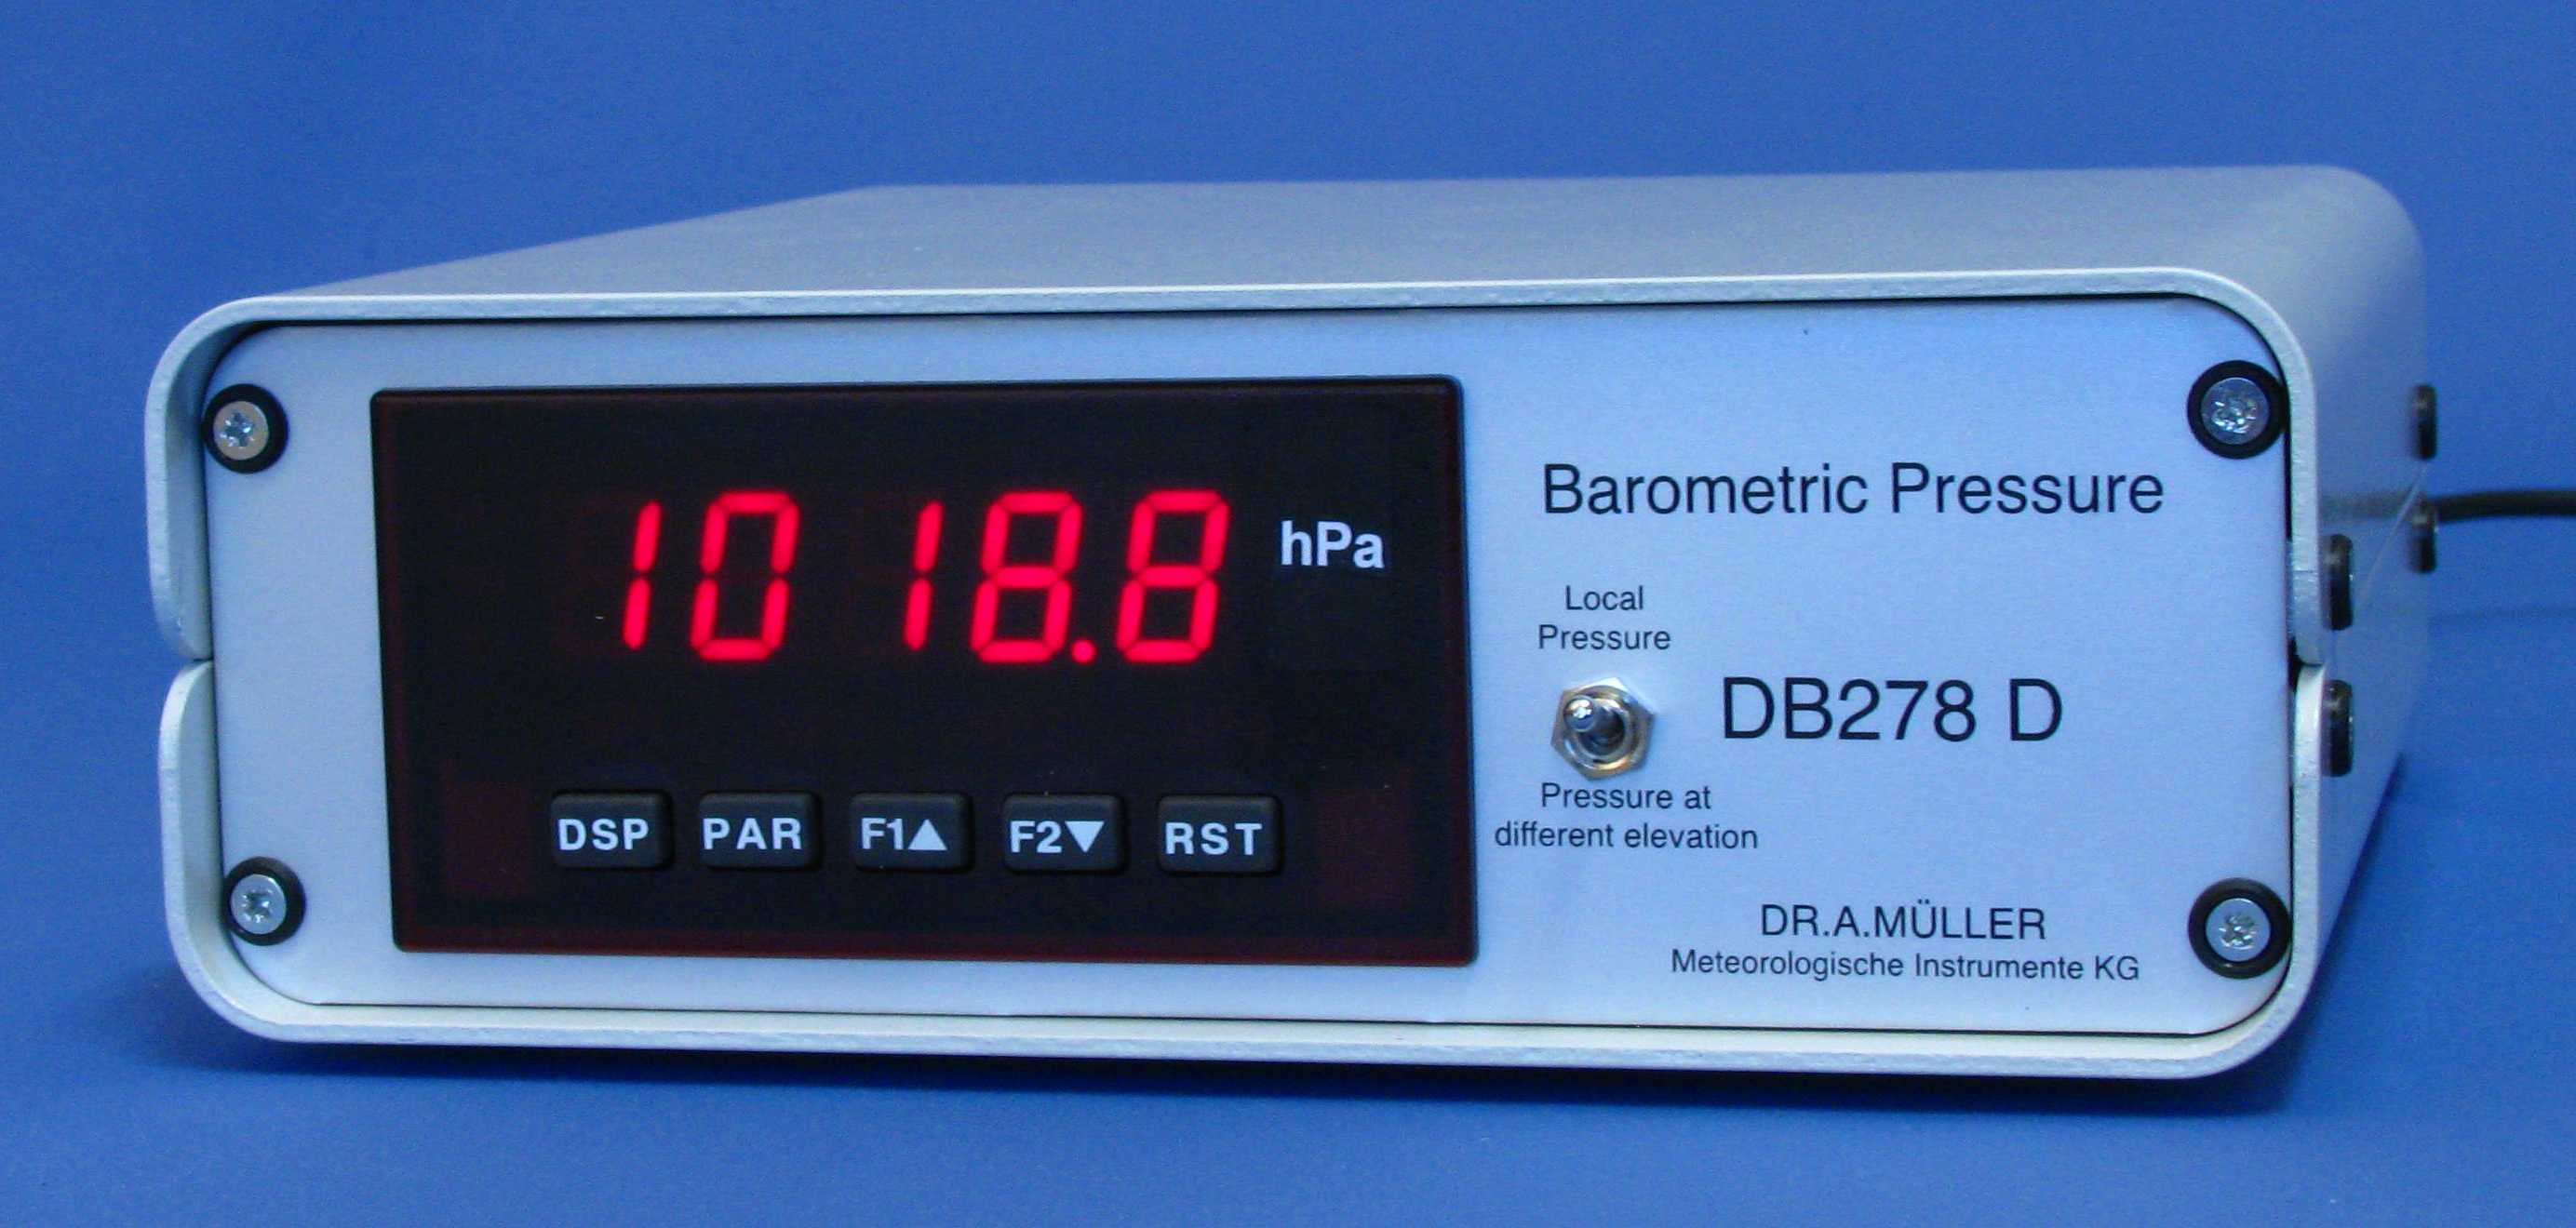 Digital Barometers